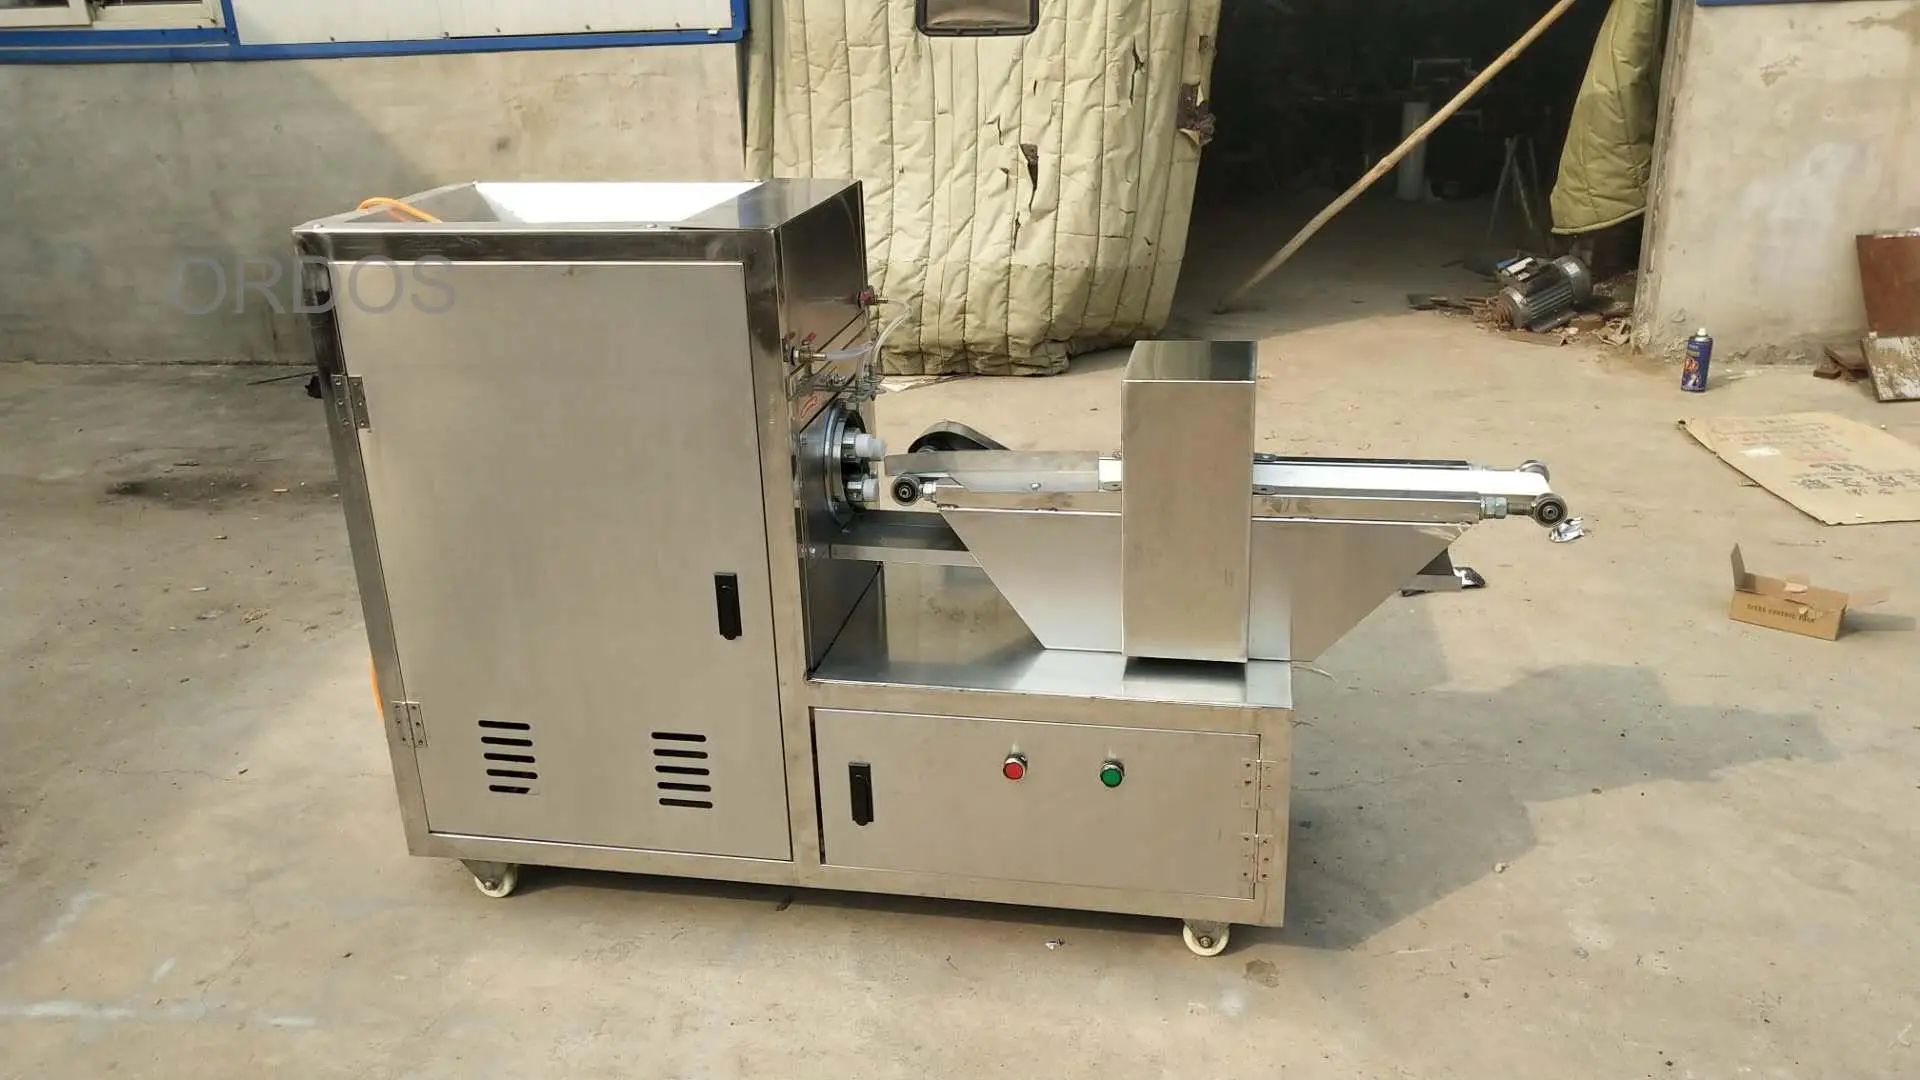 Търговска машина за усукване на печено тесто Автоматична машина за приготвяне на сладки хрупкав понички Екструдер за закуски, от неръждаема стомана